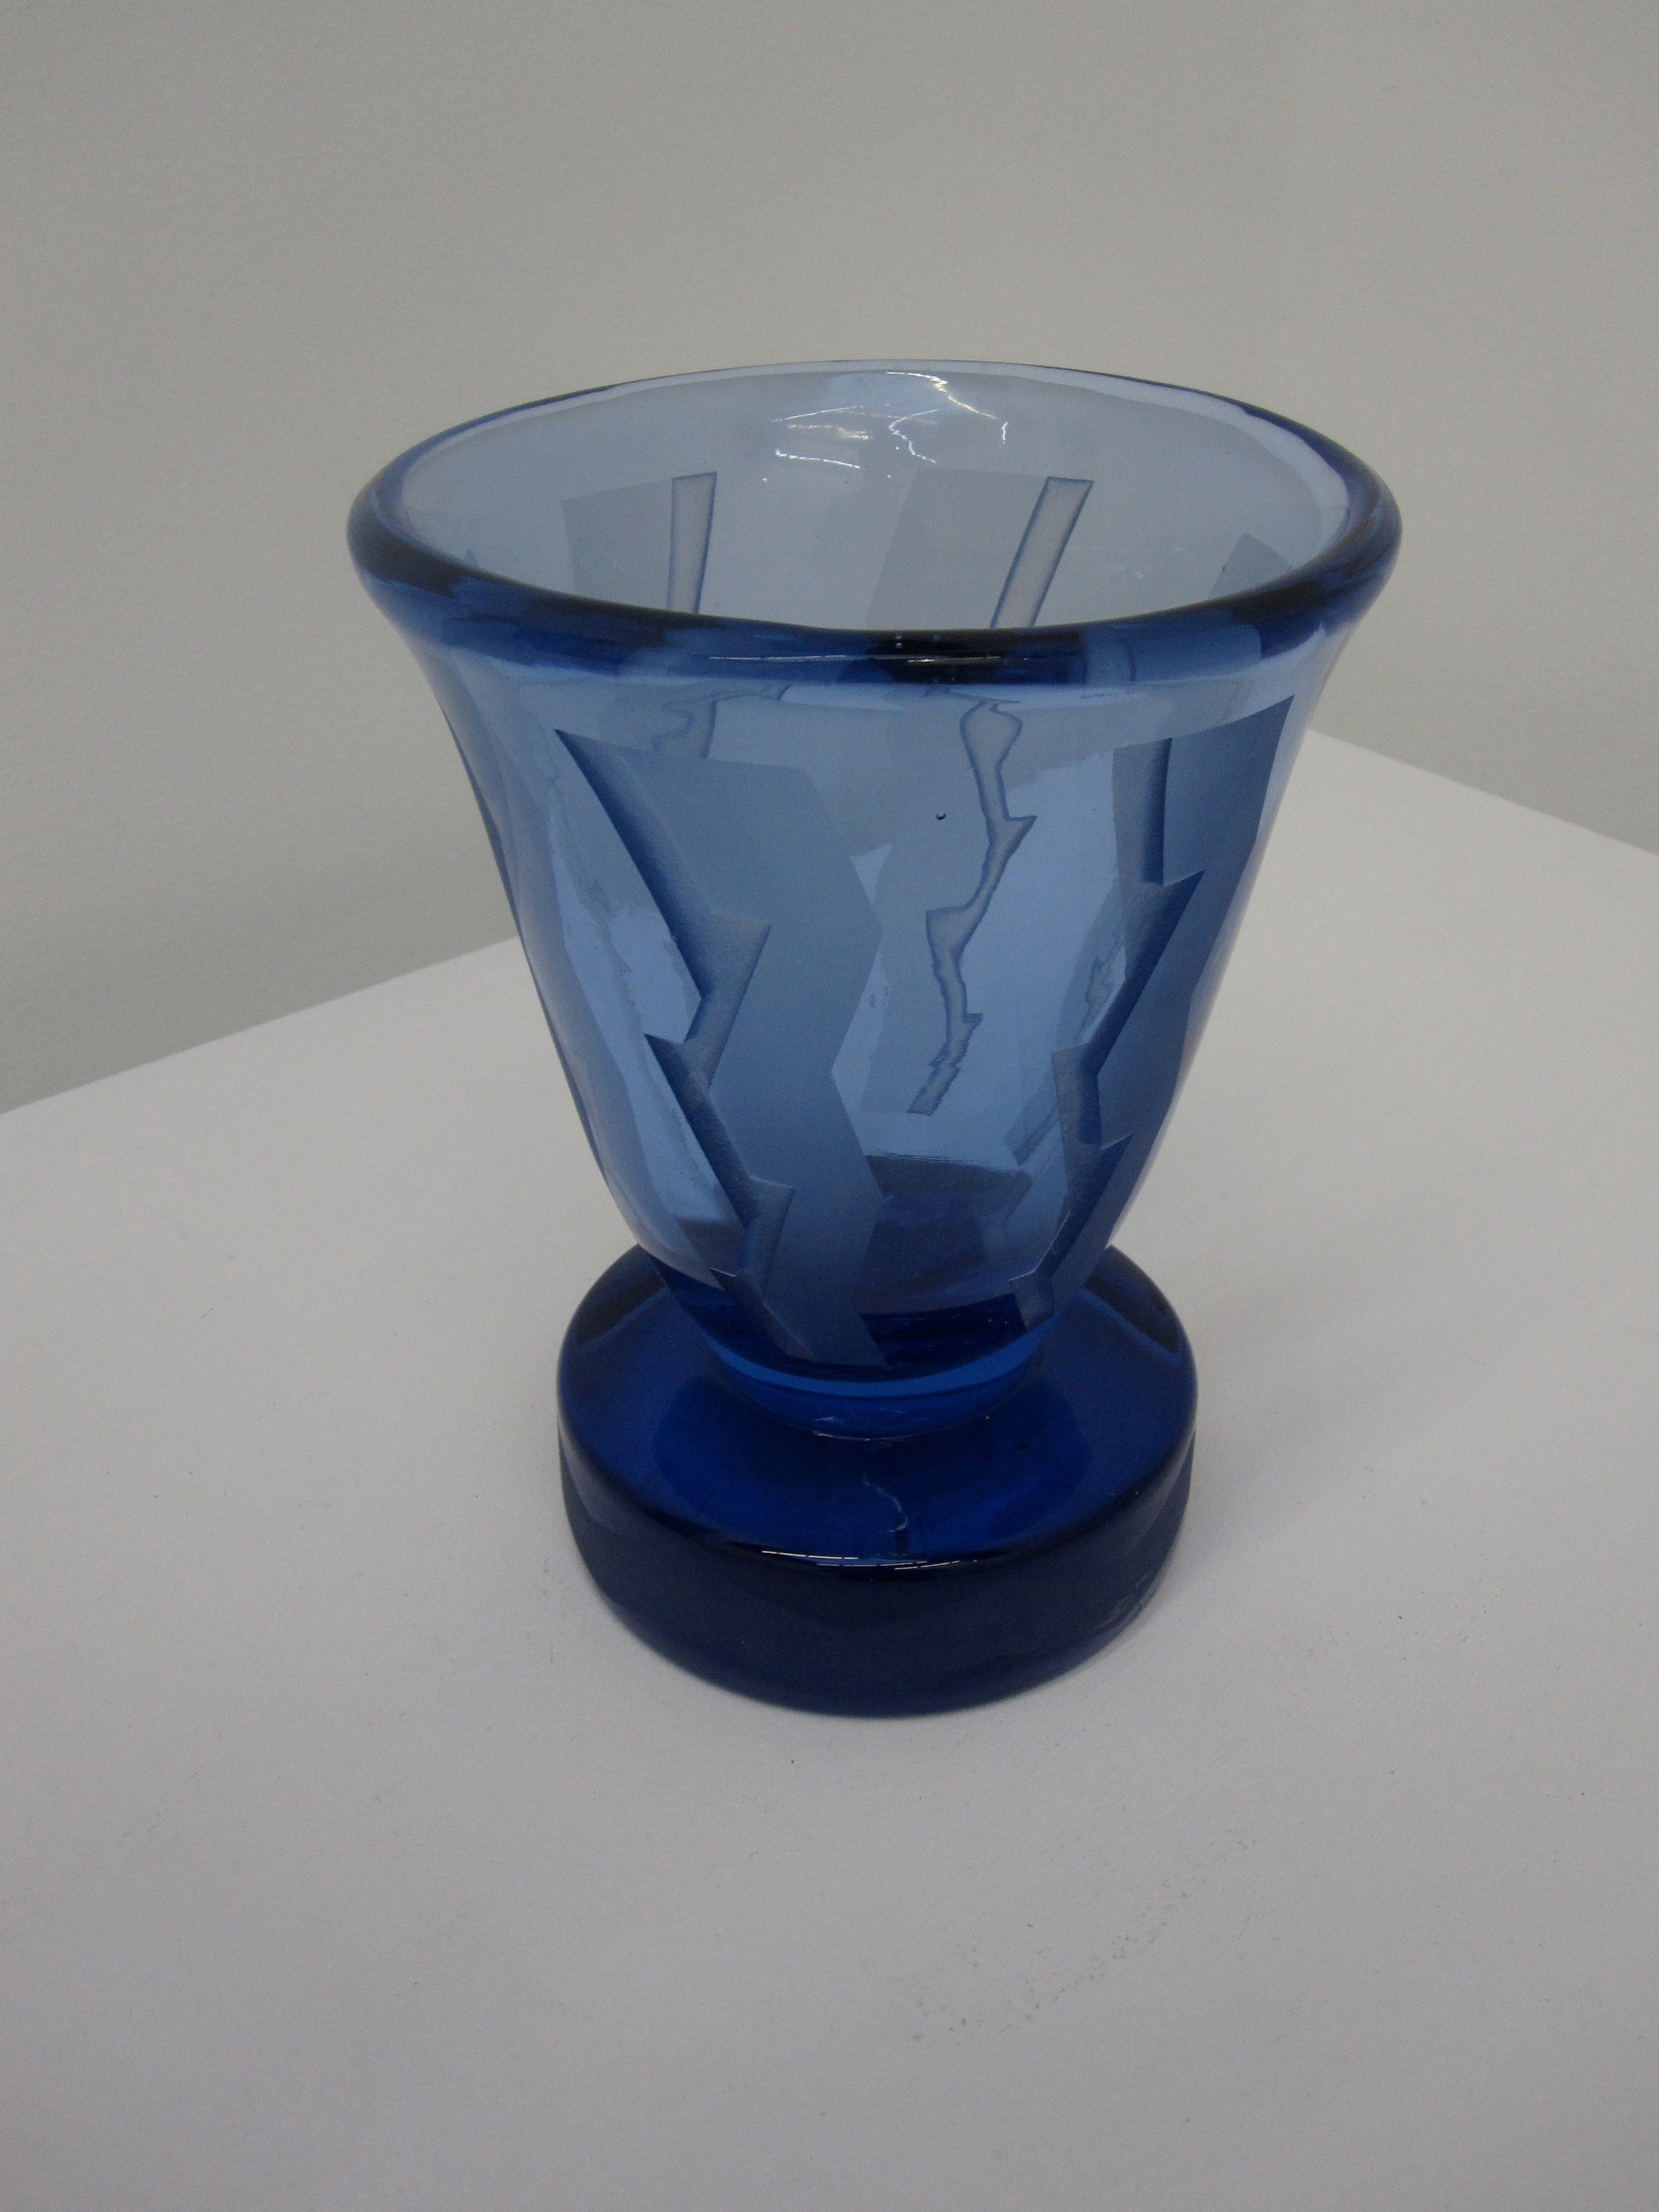 Art Deco Style Blue Glass Acid-Etched Daum Nancy Vase